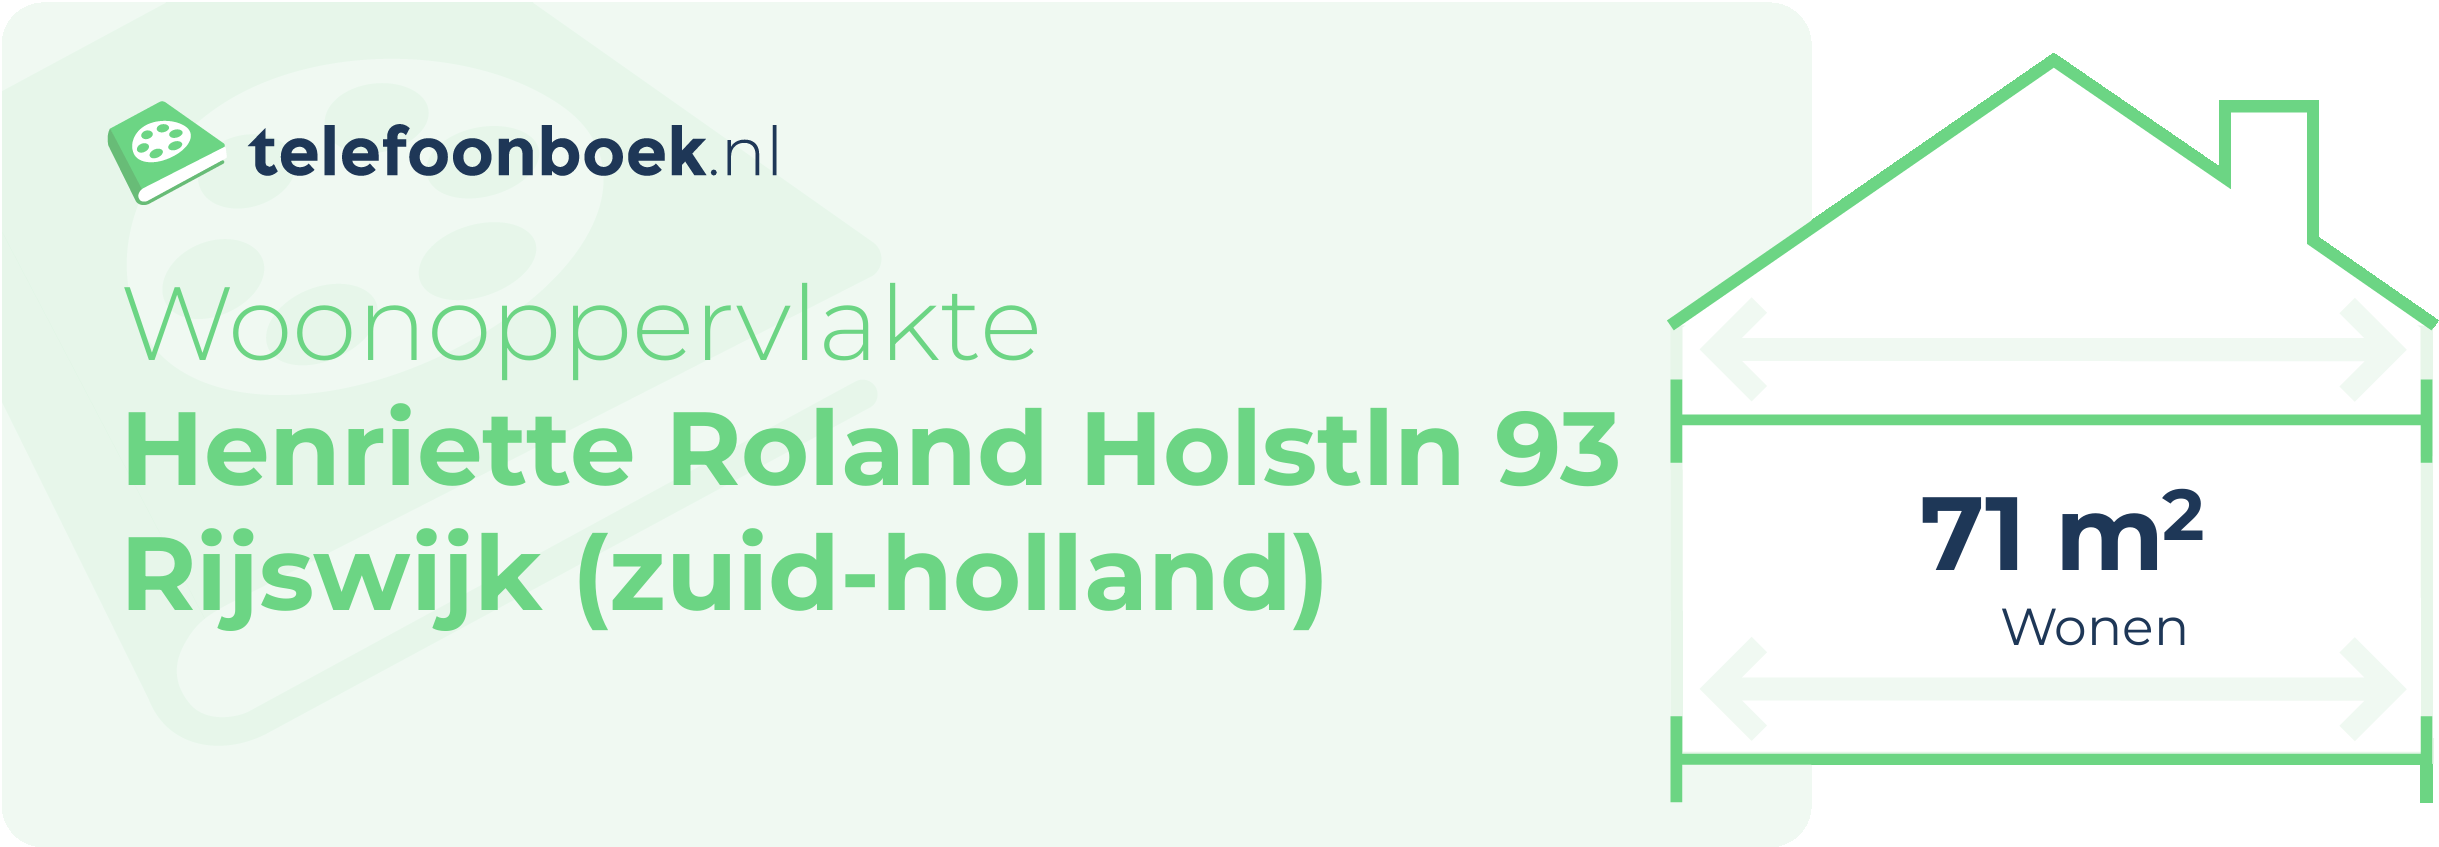 Woonoppervlakte Henriette Roland Holstln 93 Rijswijk (Zuid-Holland)